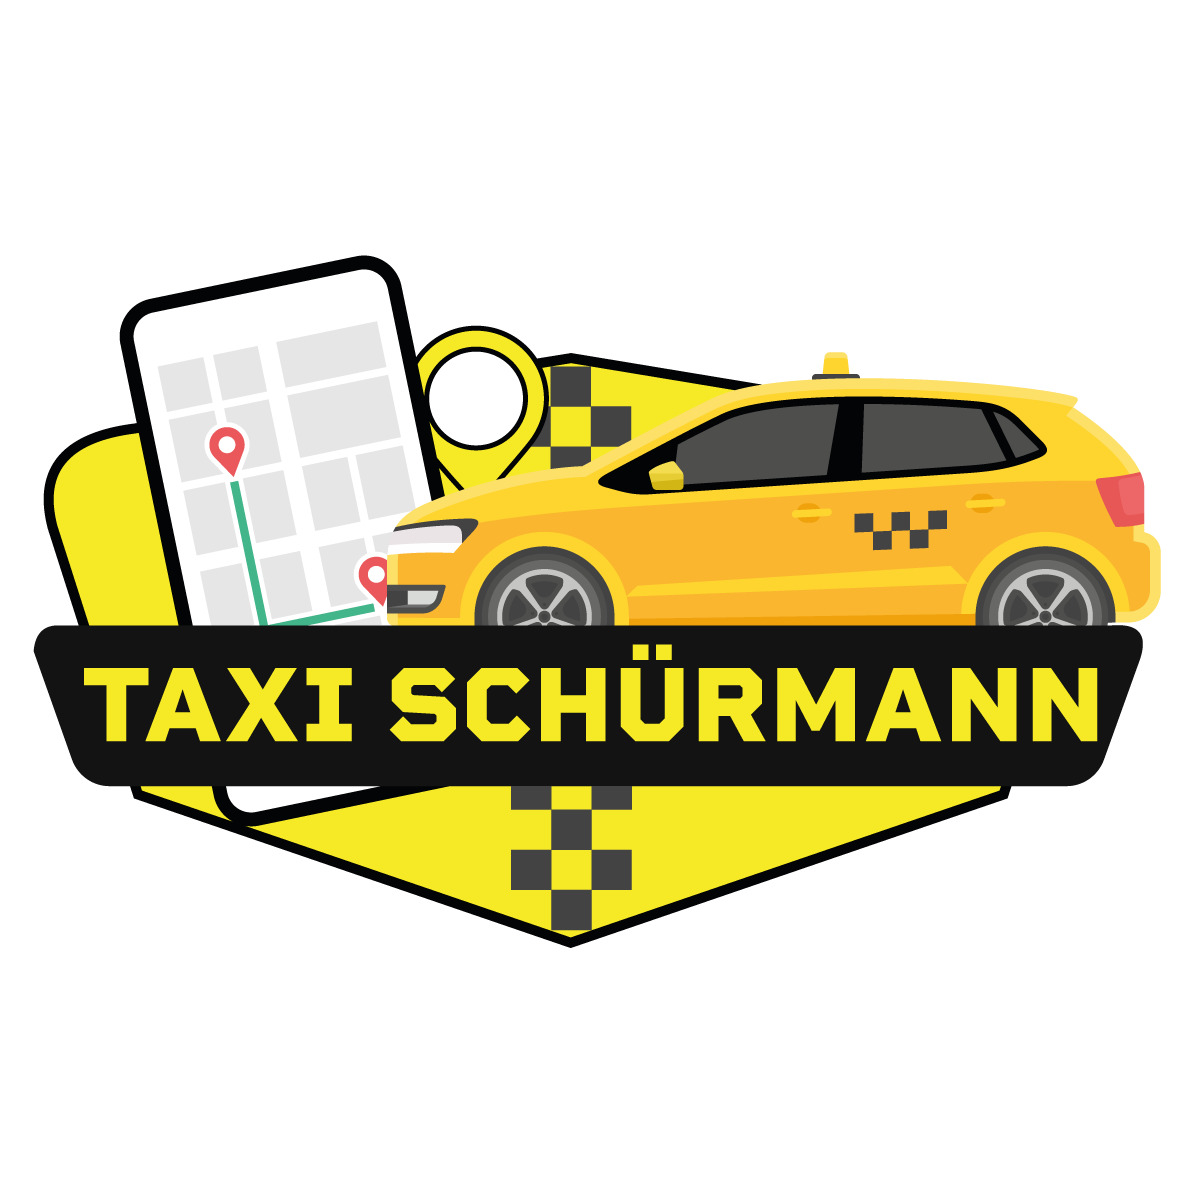 Taxi Schürmann Inh. Thorsten Sobiech in Rheine - Logo